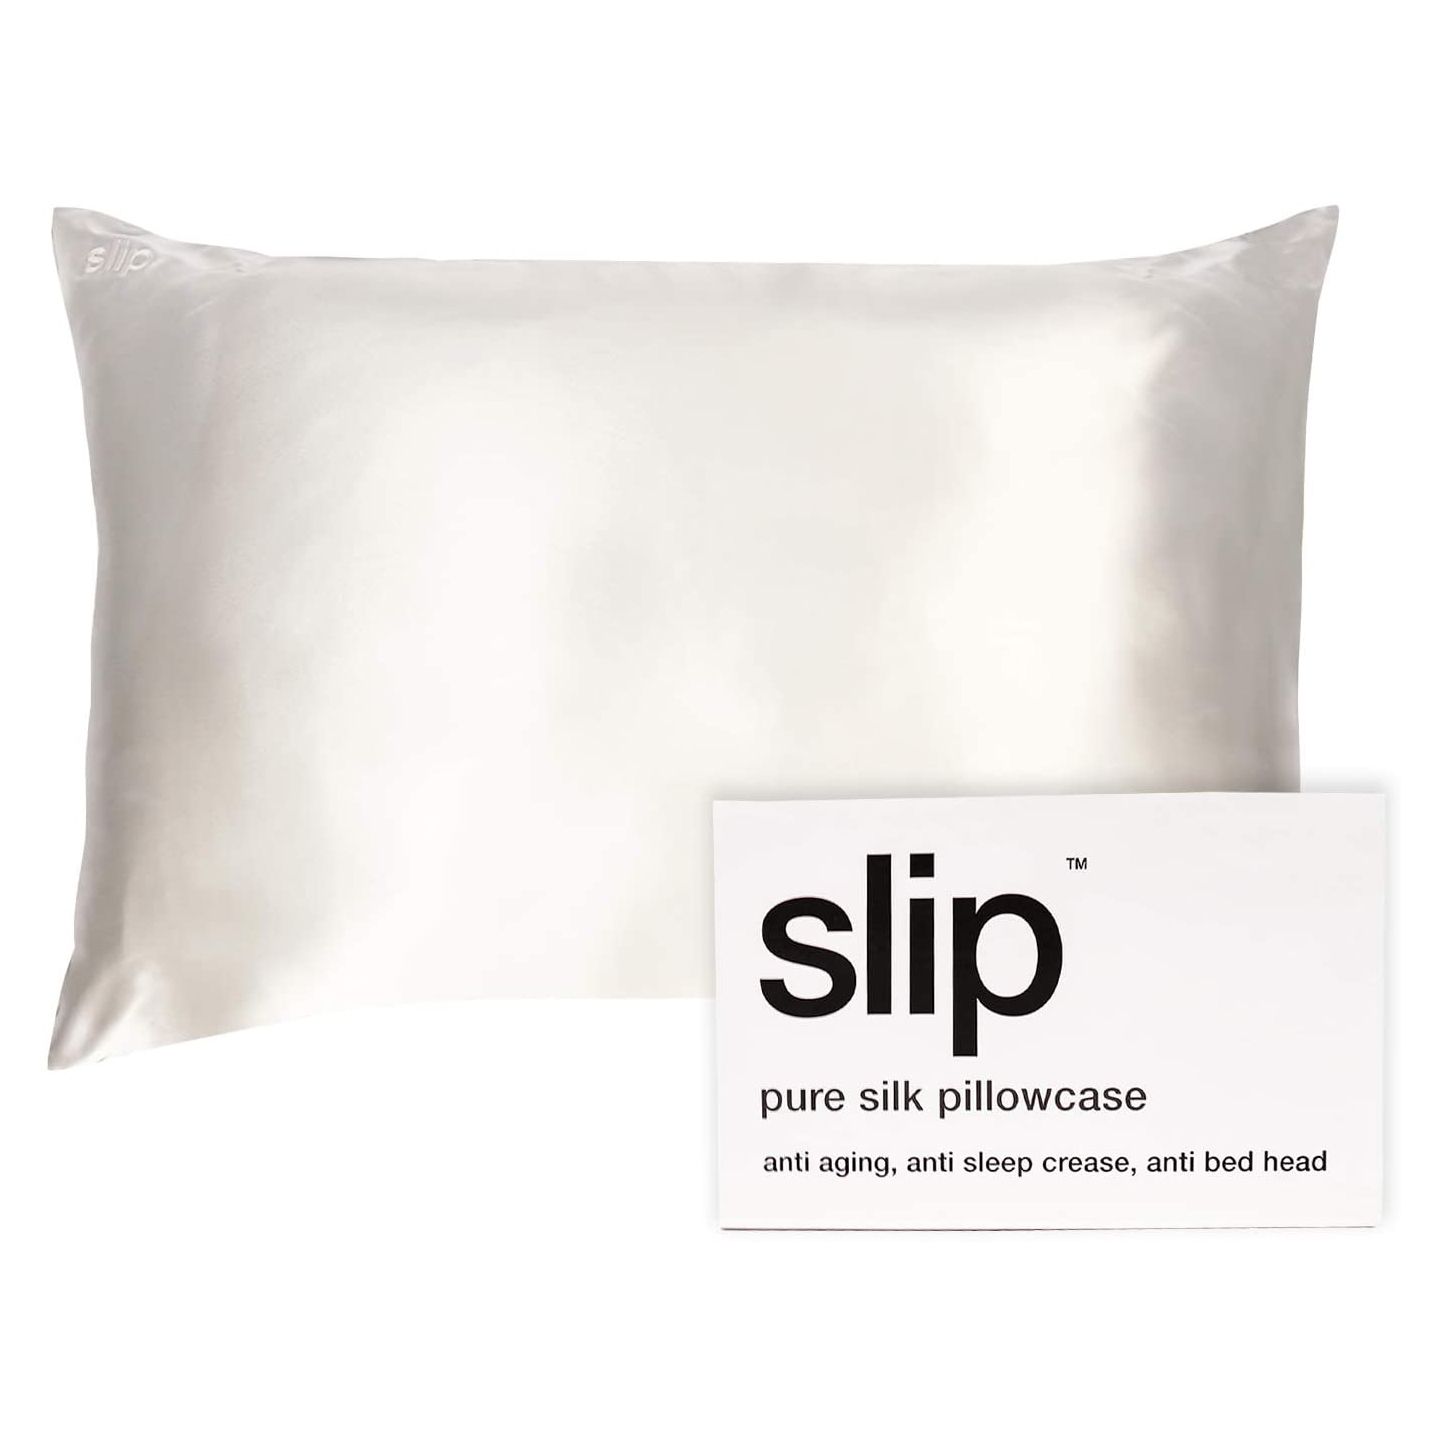 Әжеге арналған ең жақсы сыйлықтар - SLIP Silk Pillowcase